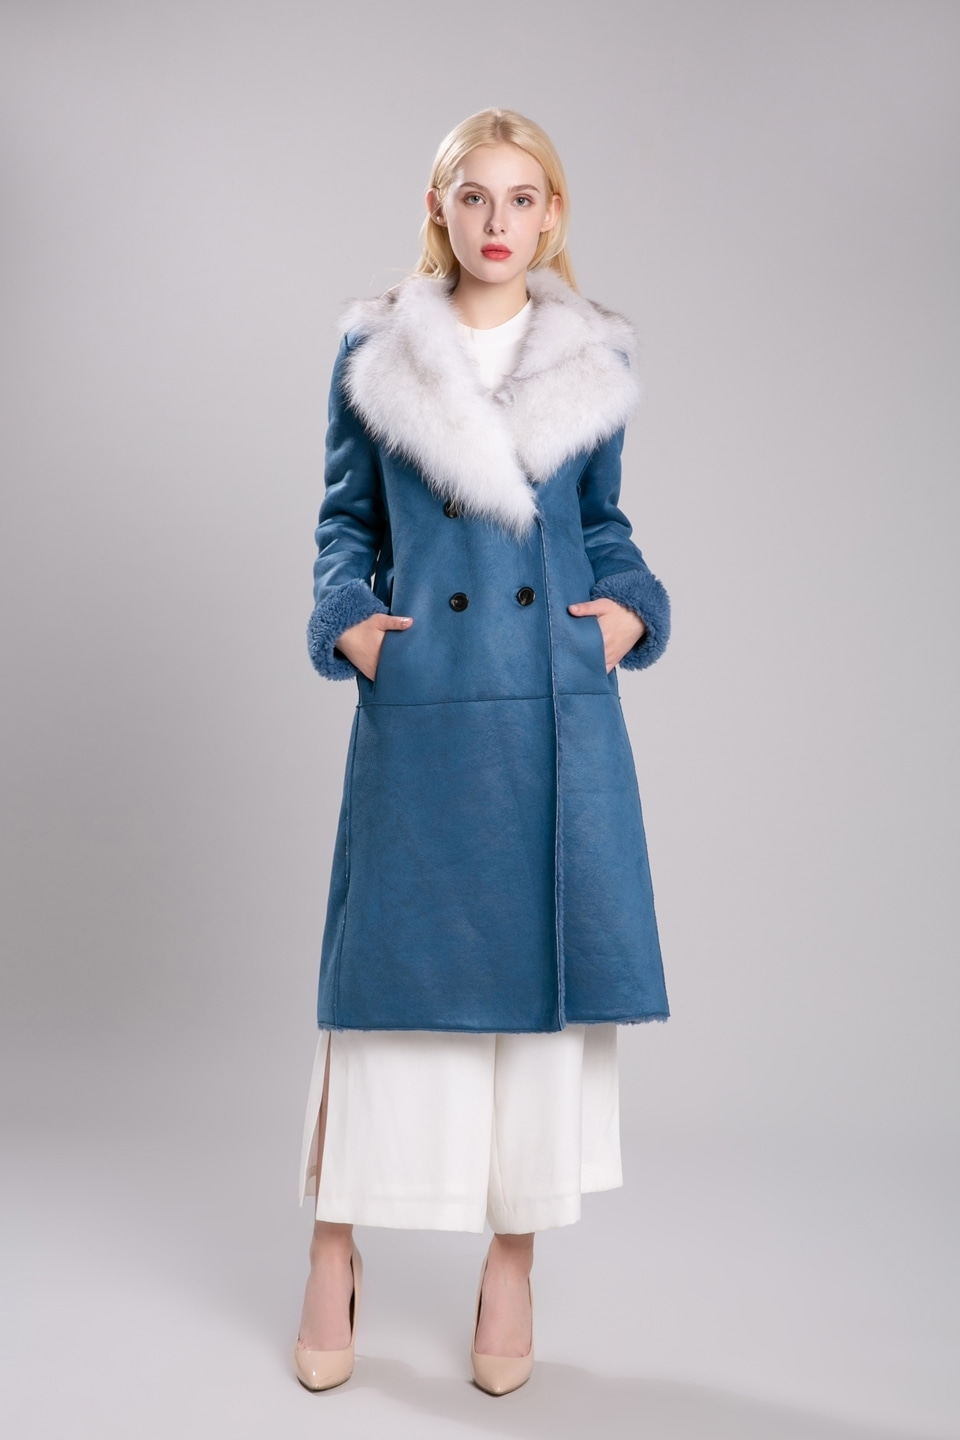 2019 fox fur fake mustang coat (D,blue)